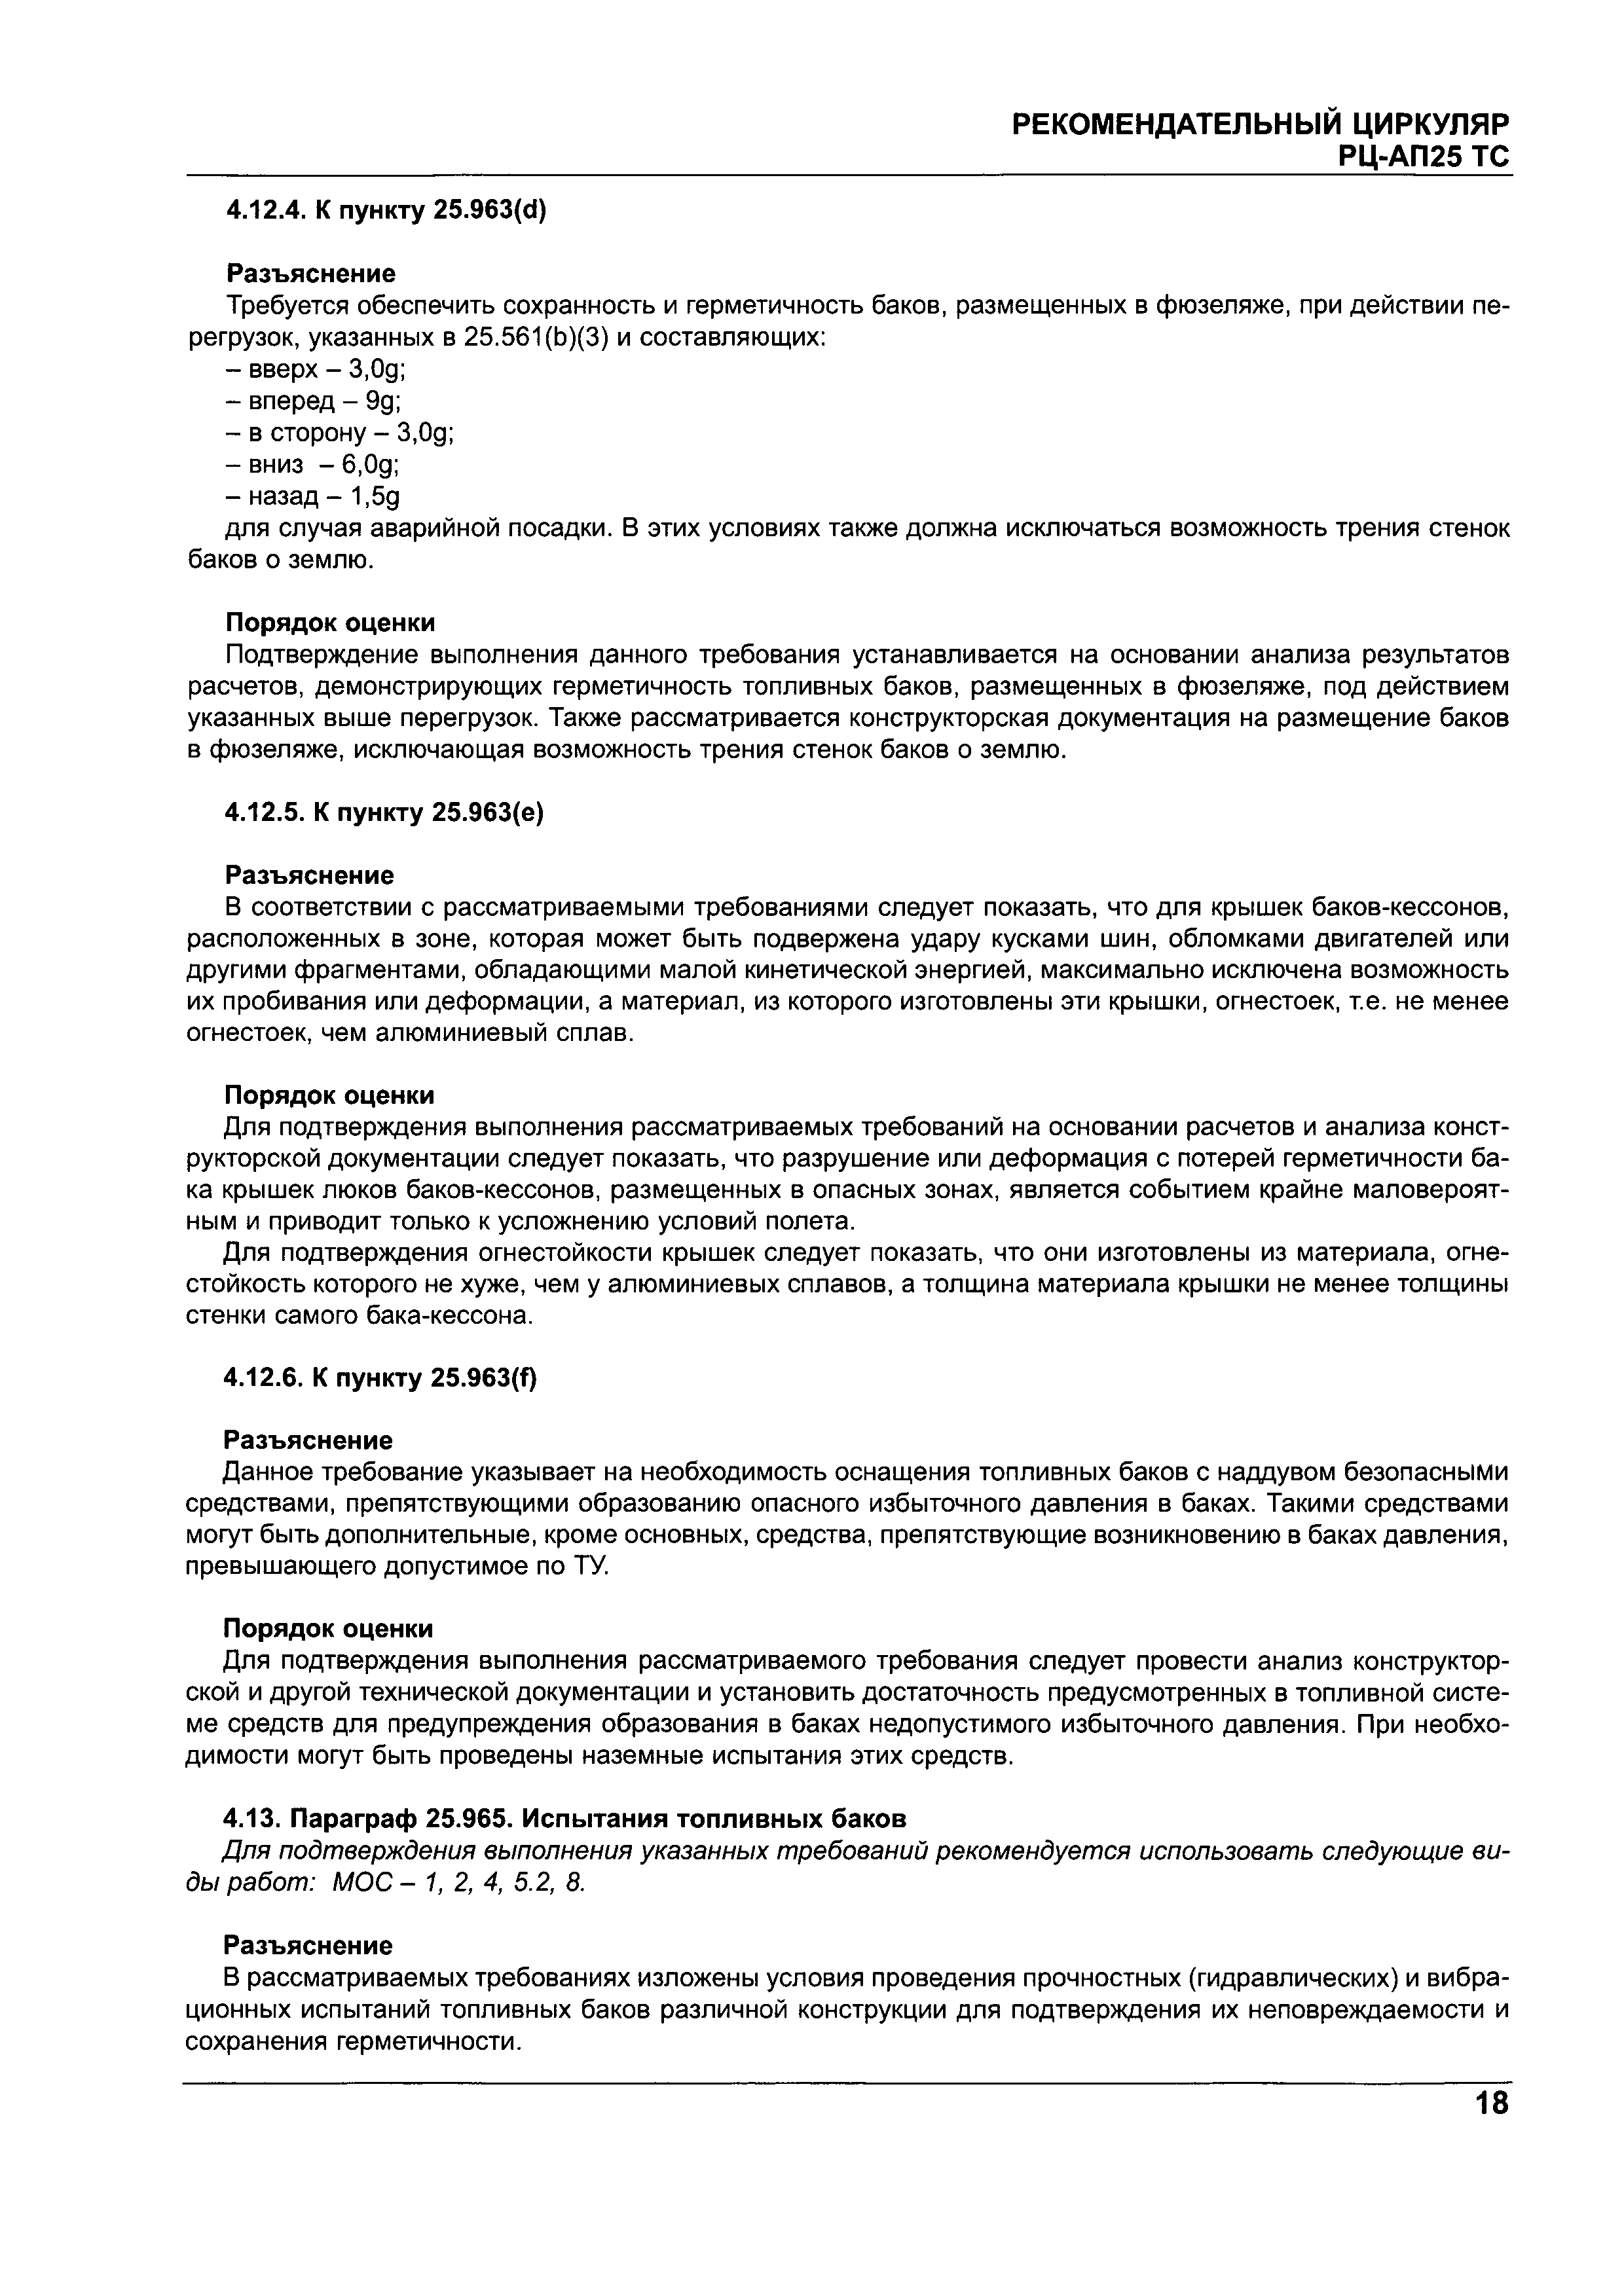 Директивное письмо 05-2004